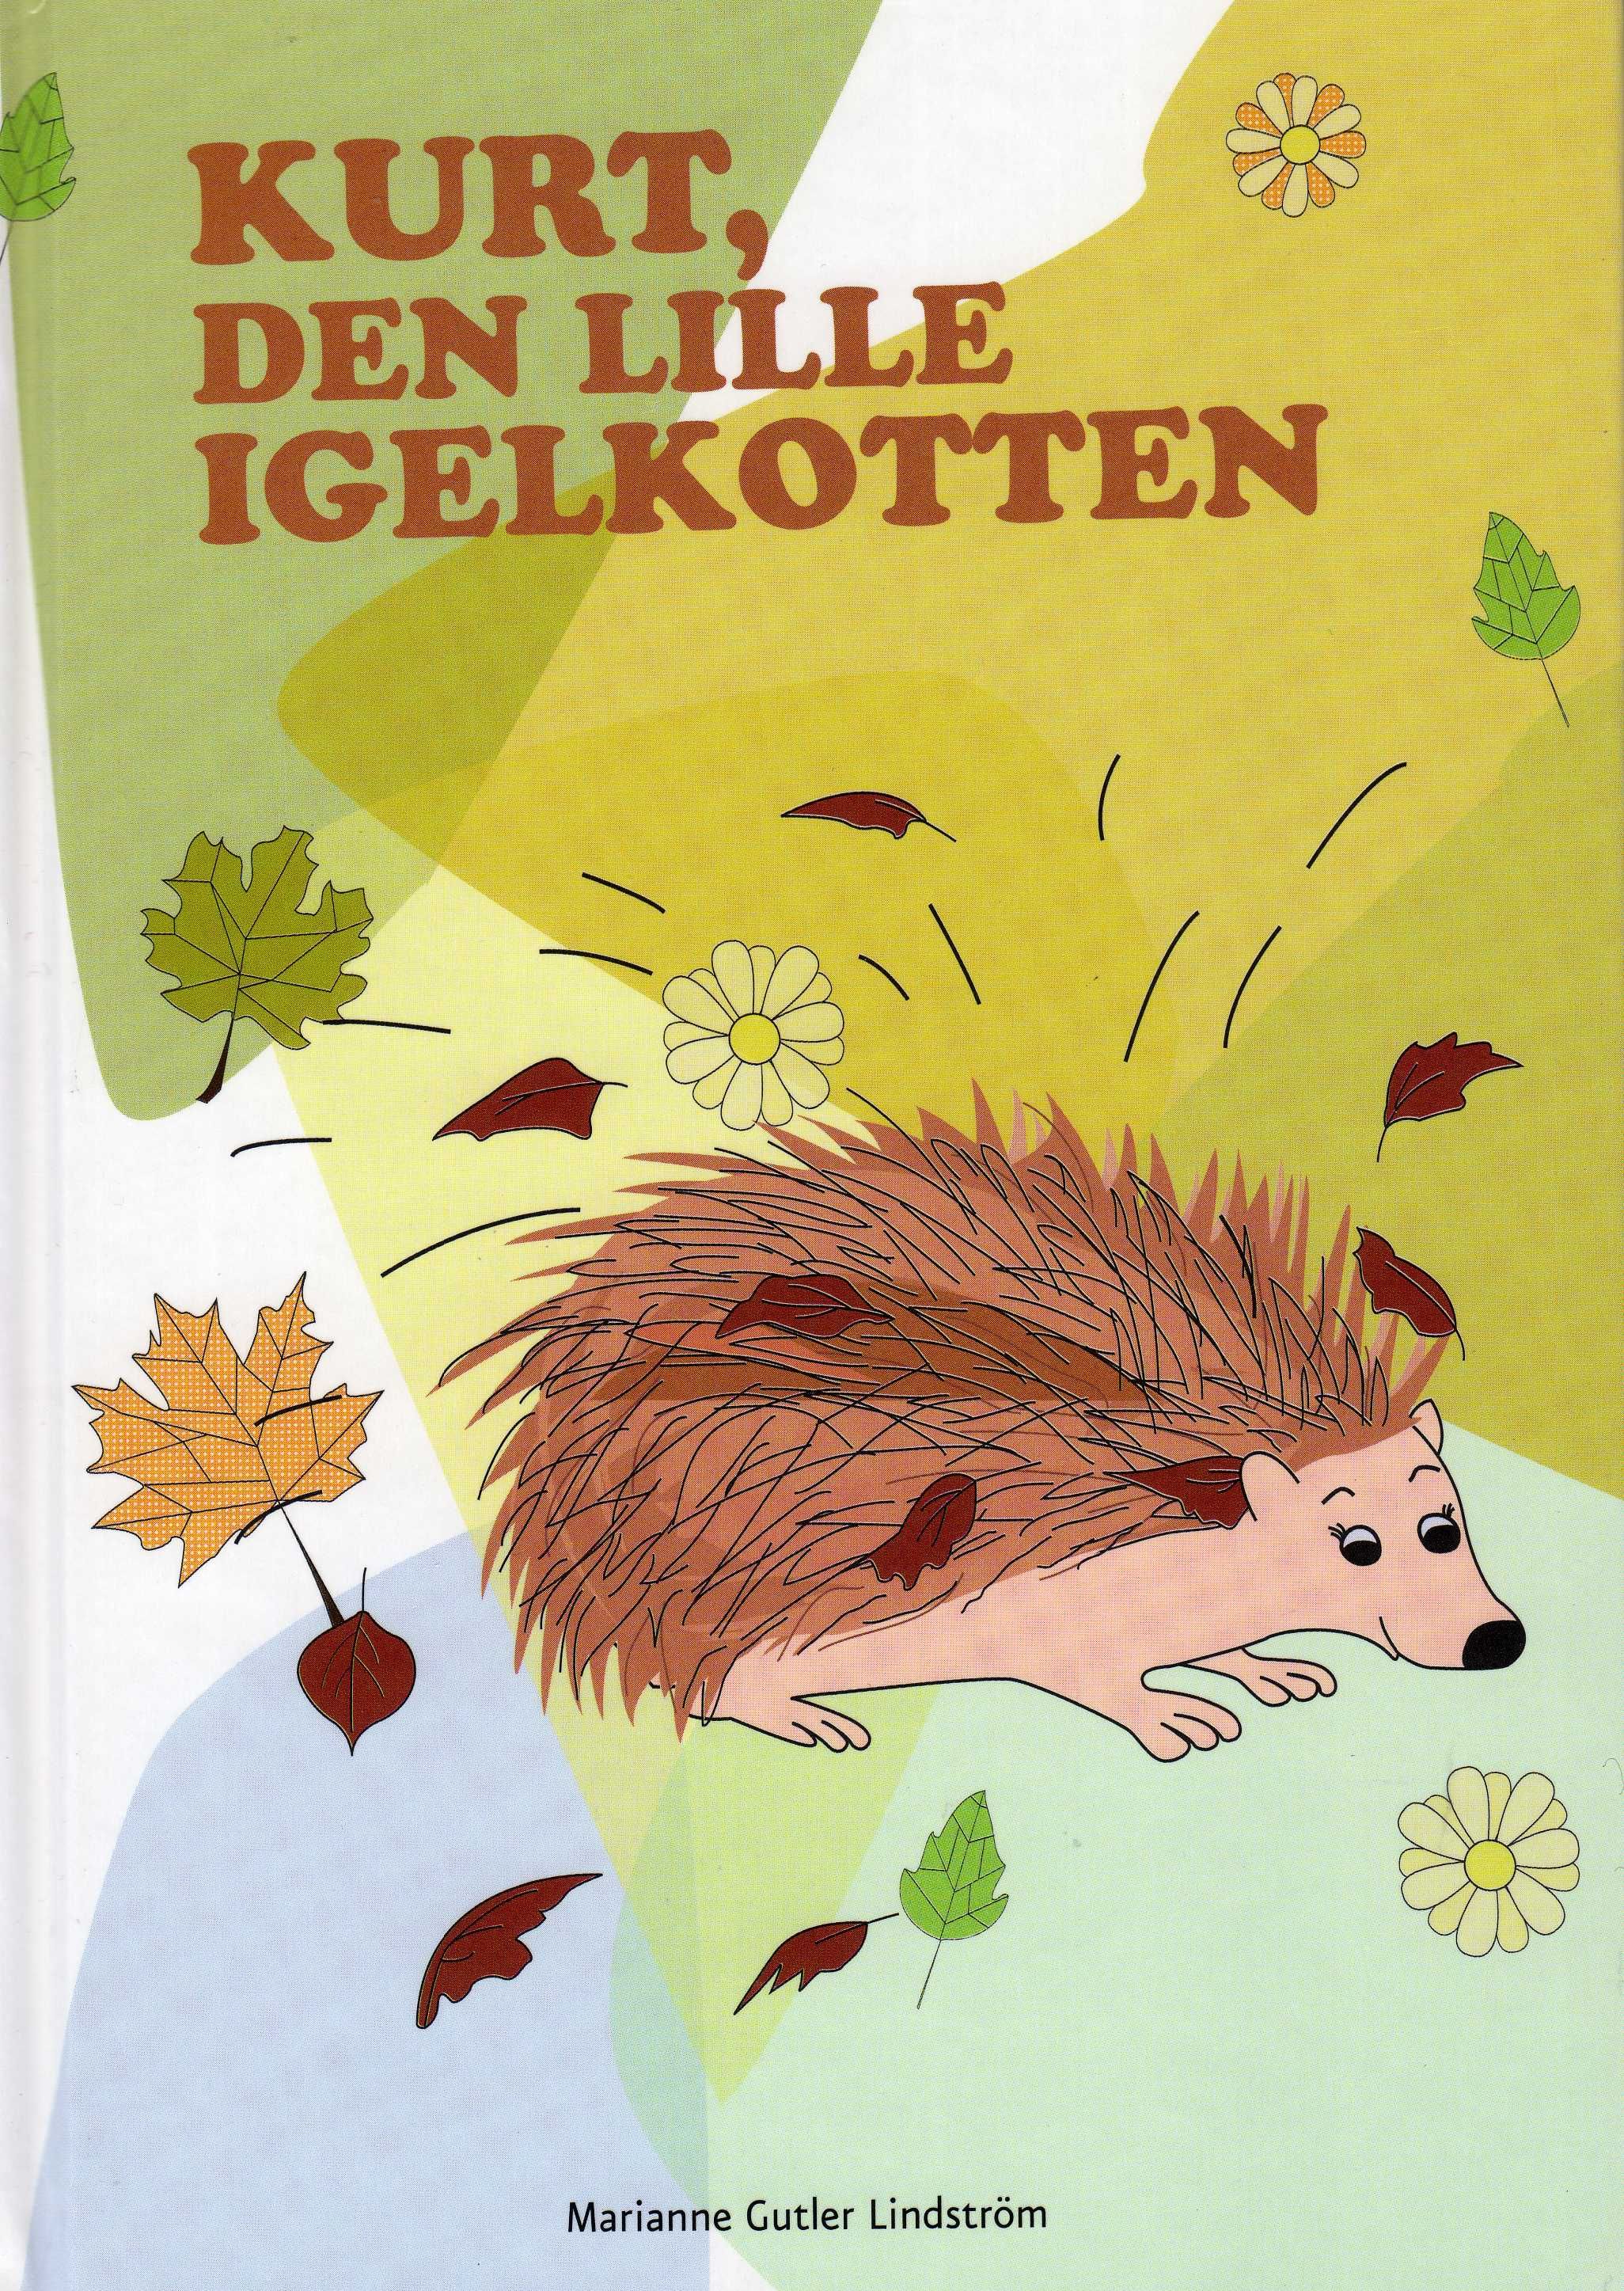 Kurt, den lille igelkotten, e-bok av Marianne Gutler Lindström